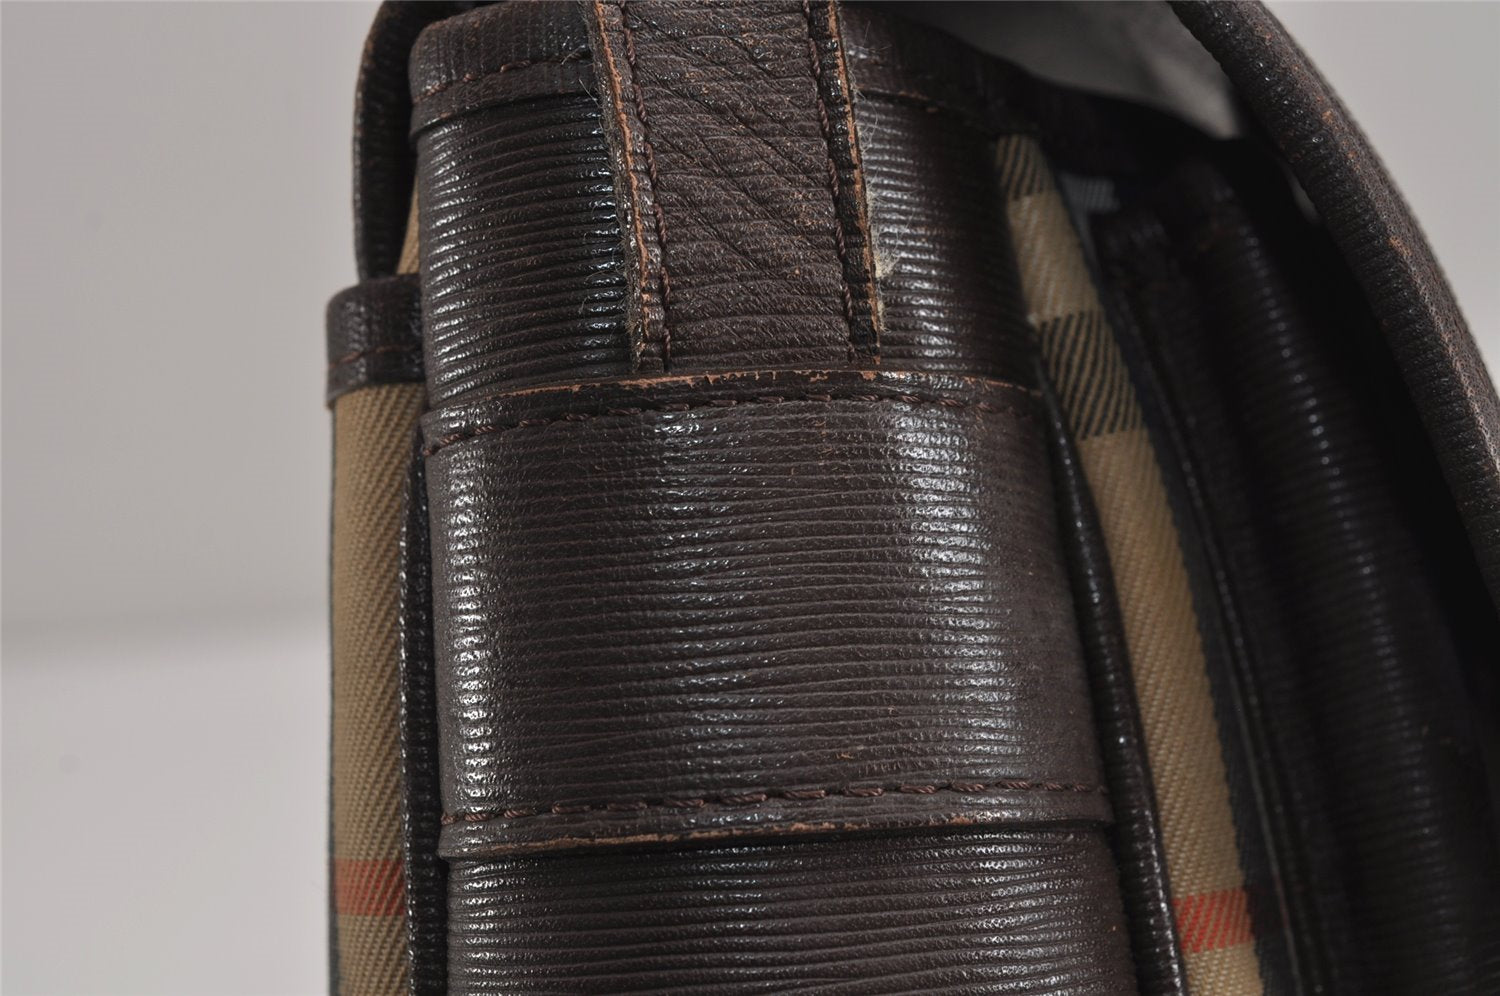 Authentic Burberrys Nova Check Shoulder Cross Bag Canvas Leather Beige 4116J